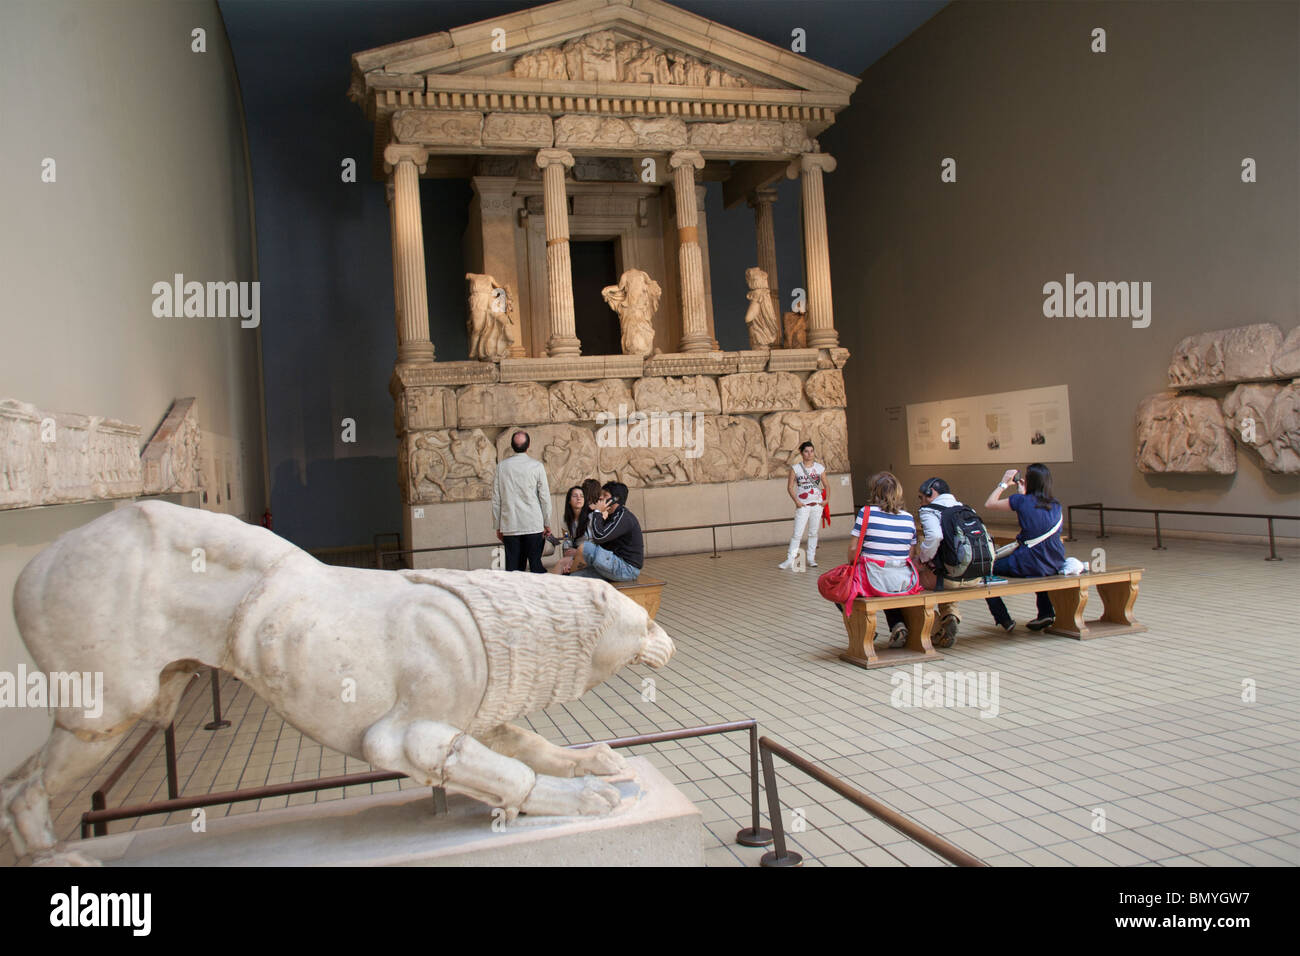 Les chambres du Parthénon au British Museum Bloomsbury Londres Angleterre GO UK Banque D'Images